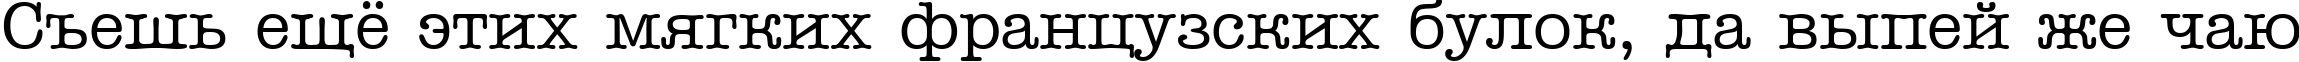 Пример написания шрифтом a_OldTyper текста на русском